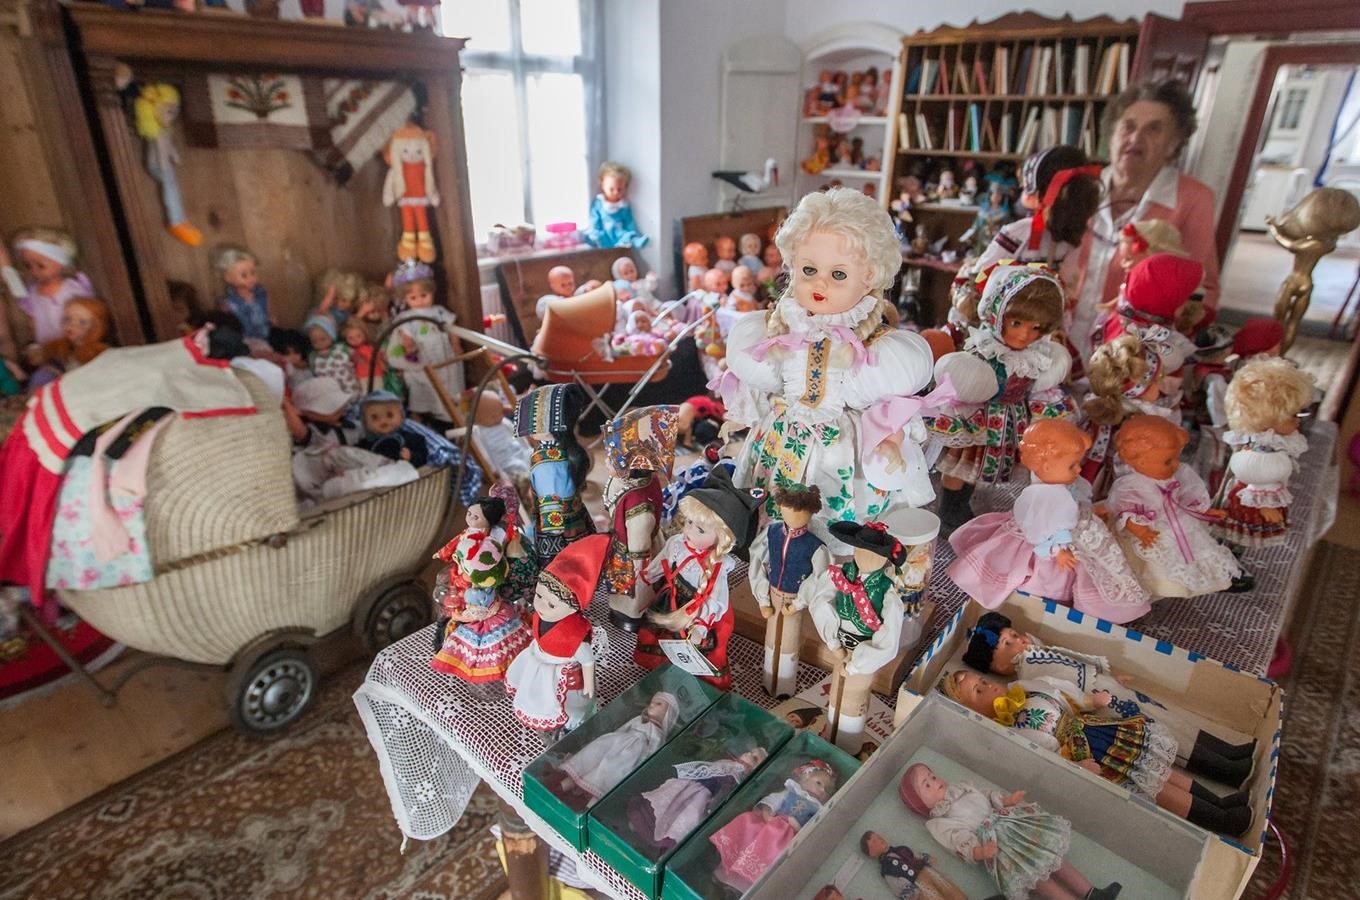 Muzeum retro panenek v Bobrové na Žďársku